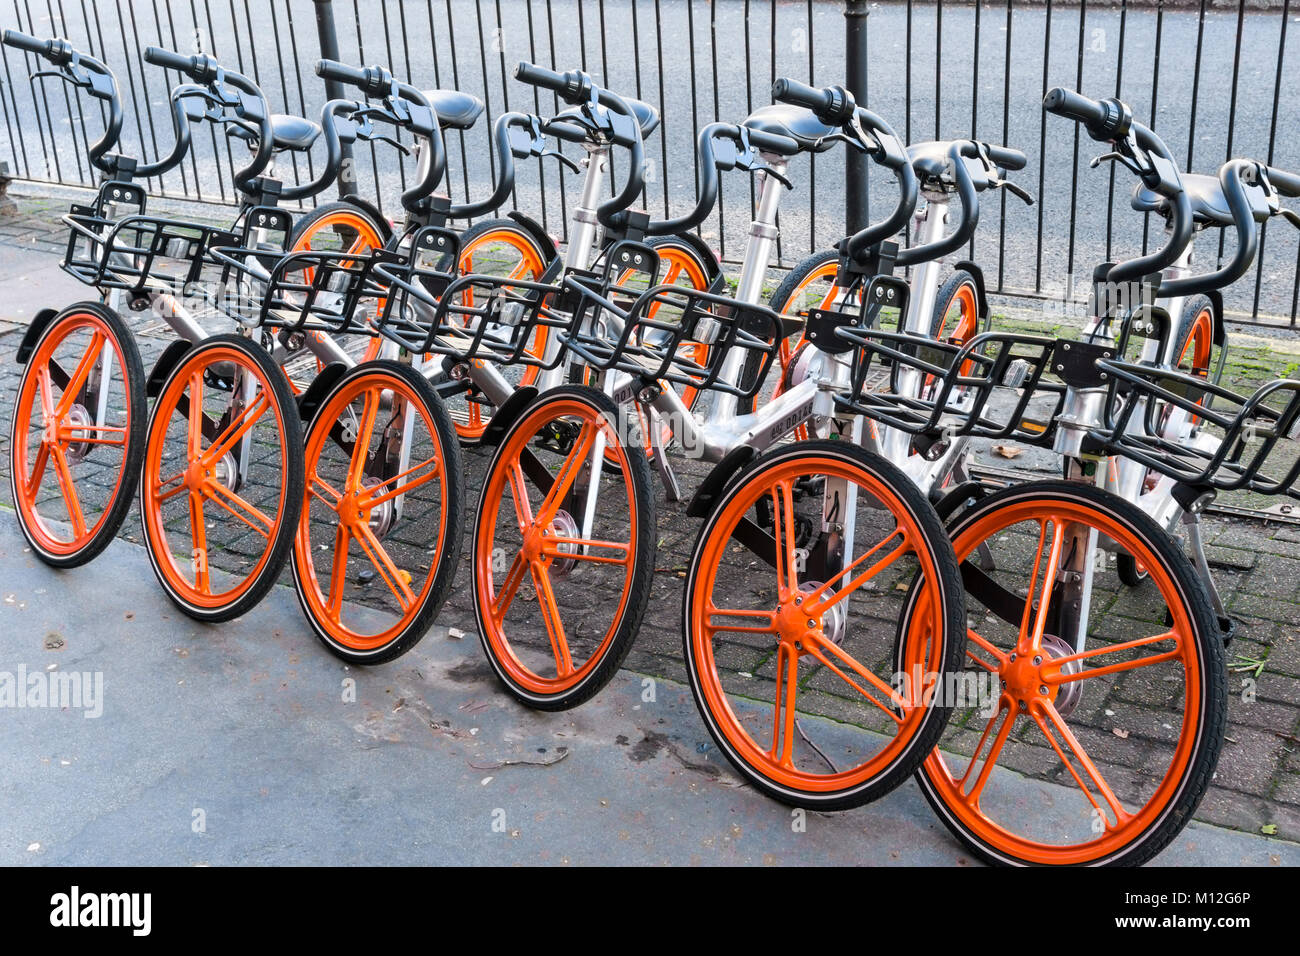 Mobike Dock - Kostenlose Fahrräder in London. Stockfoto